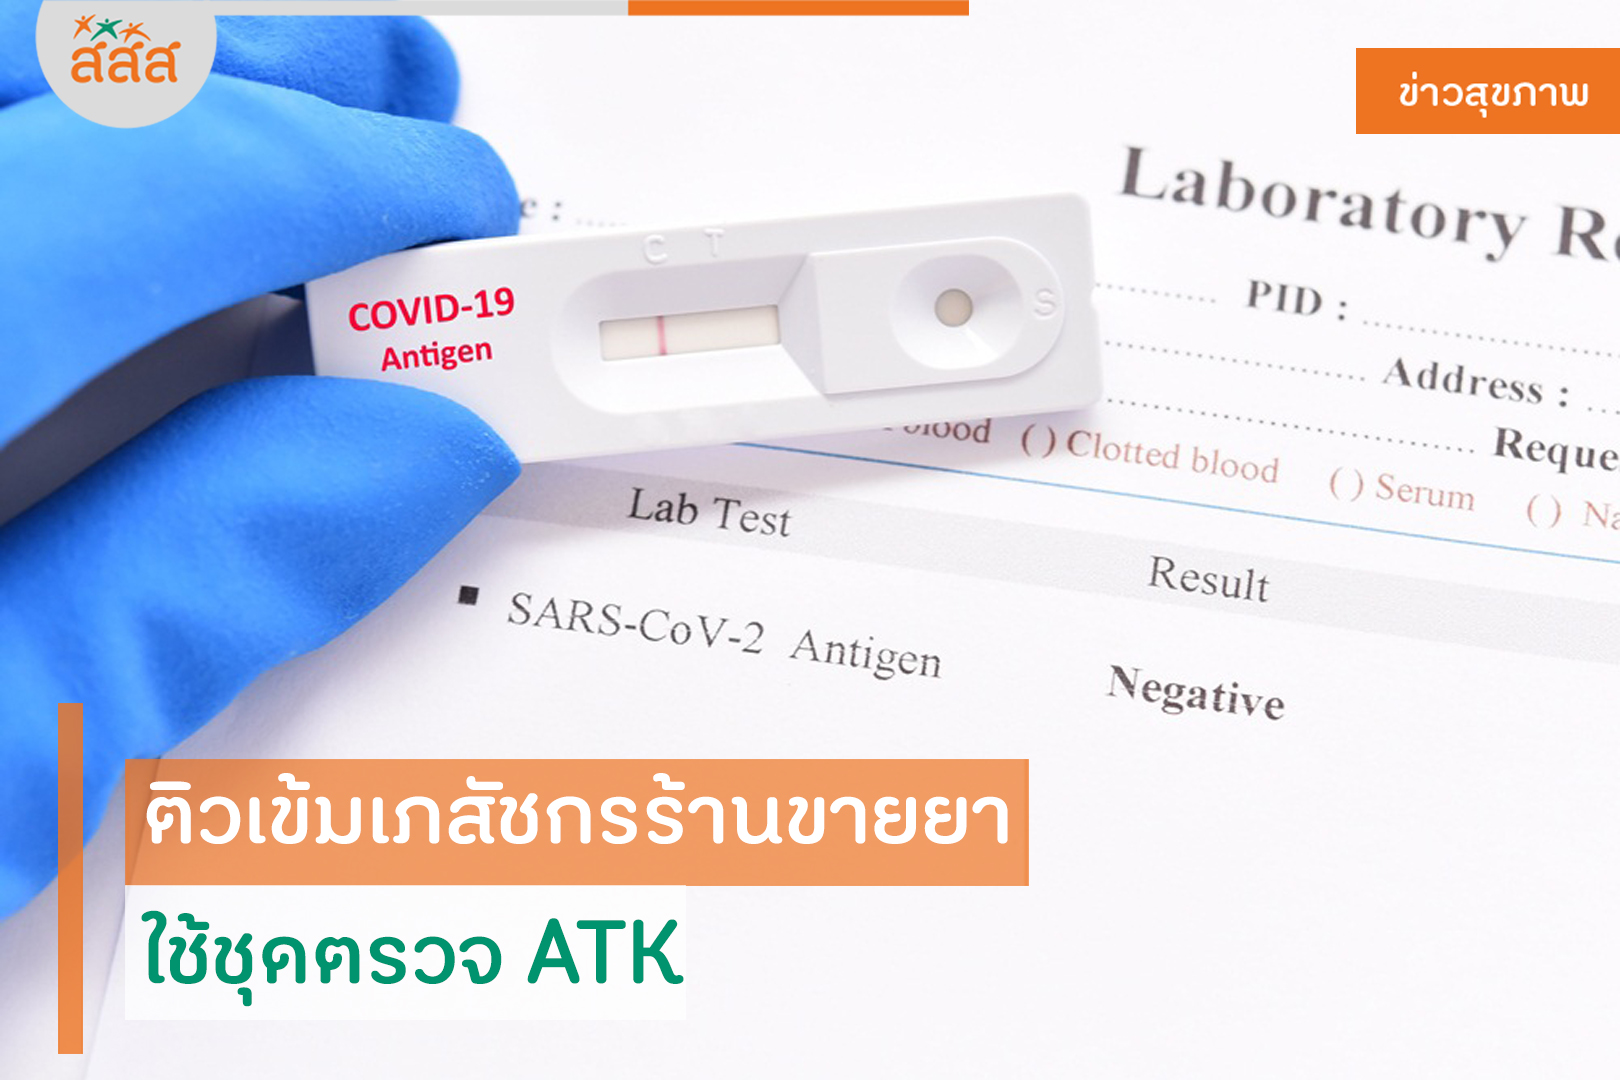 ติวเข้มเภสัชกรร้านขายยา ใช้ชุดตรวจ ATK thaihealth